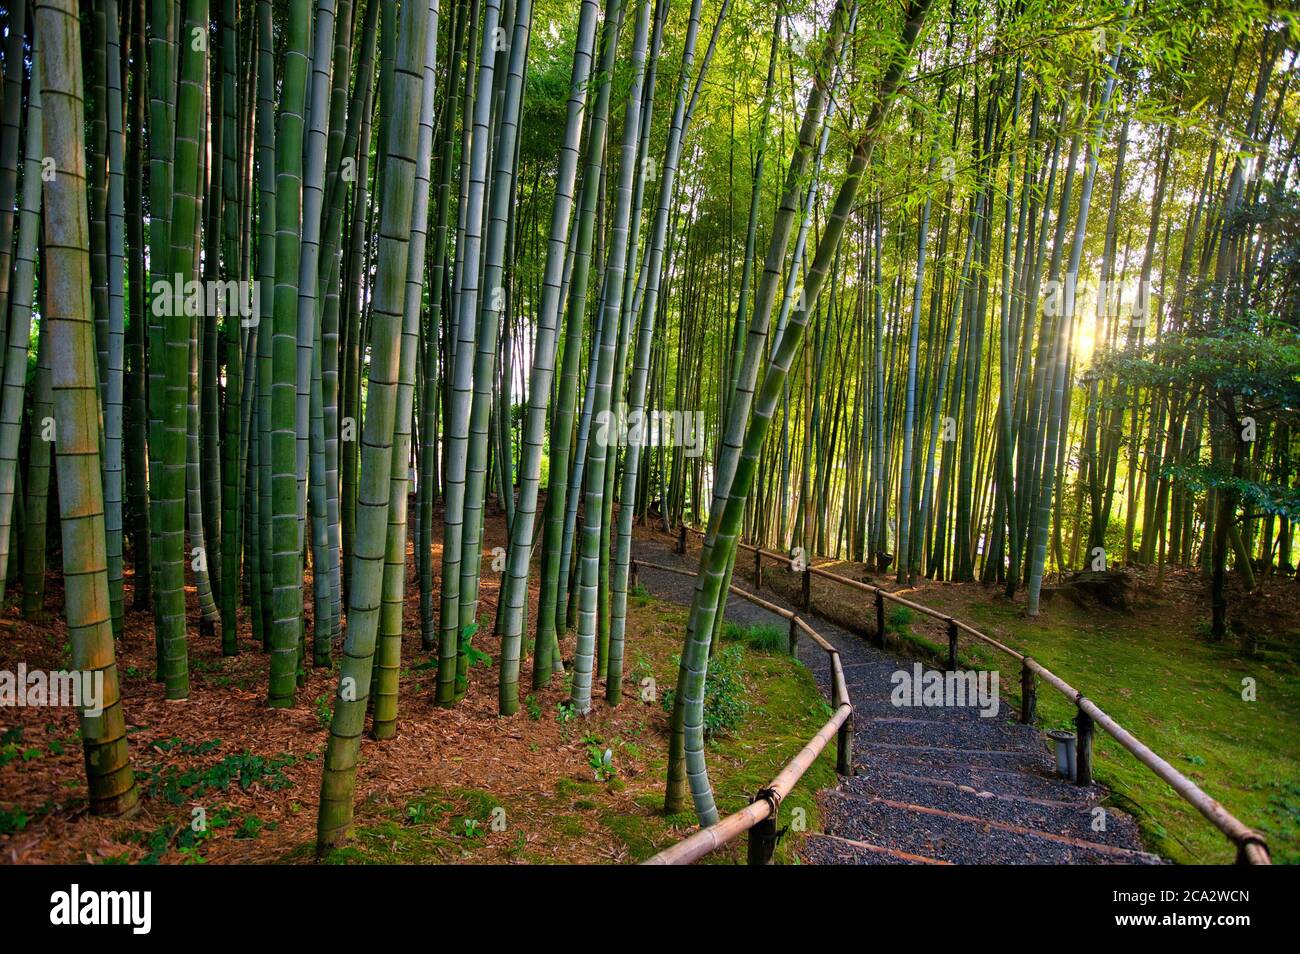 Bamboo garden, Kodaiji Temple, Gion, Kyoto, Japan. Stock Photo